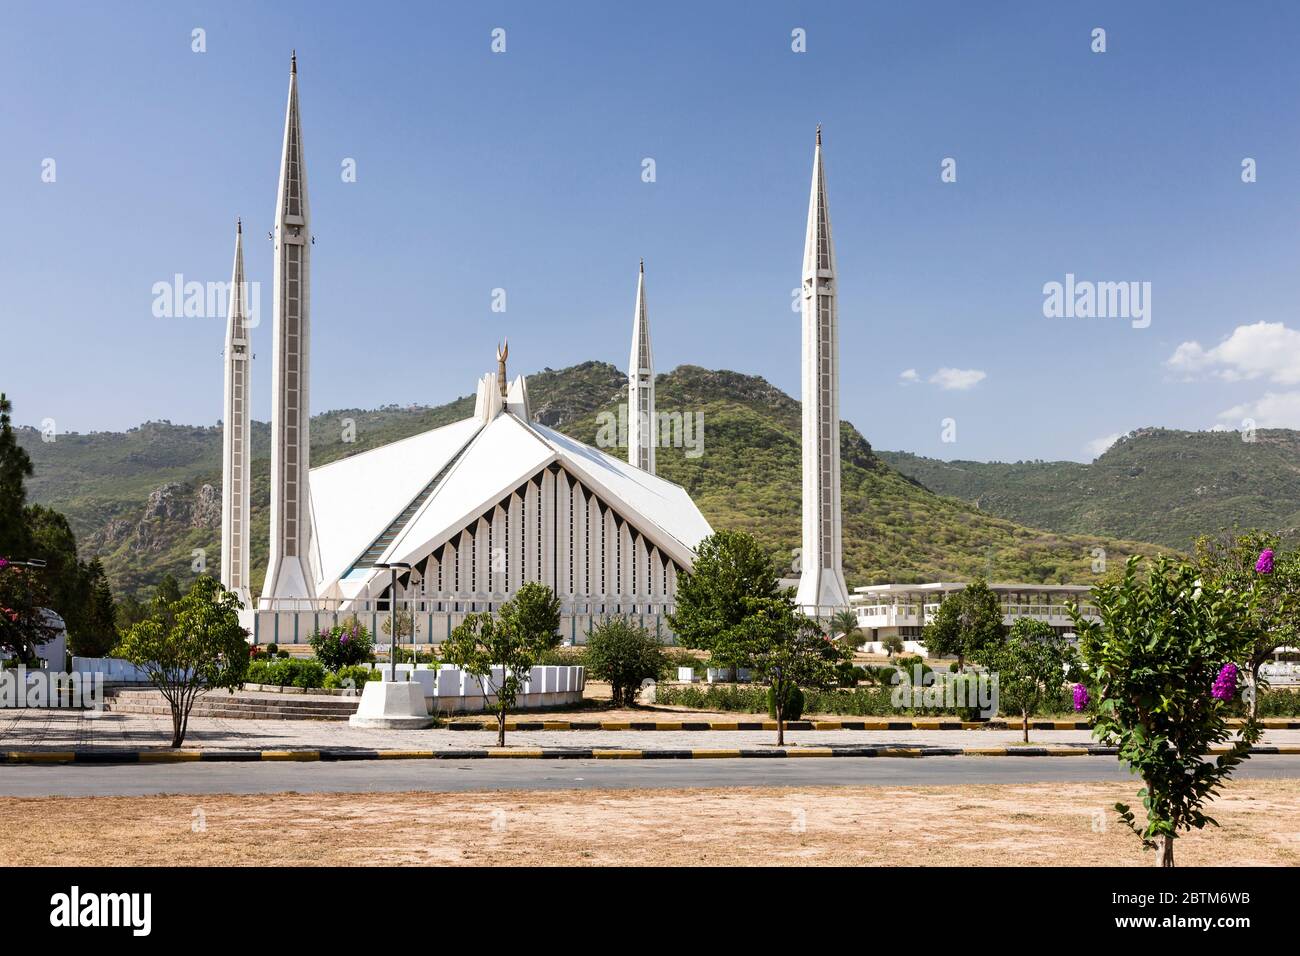 Mosquée Faisal, mosquée moderne en forme de tente bédouine, Islamabad, territoire de la capitale d'Islamabad, Pakistan, Asie du Sud, Asie Banque D'Images